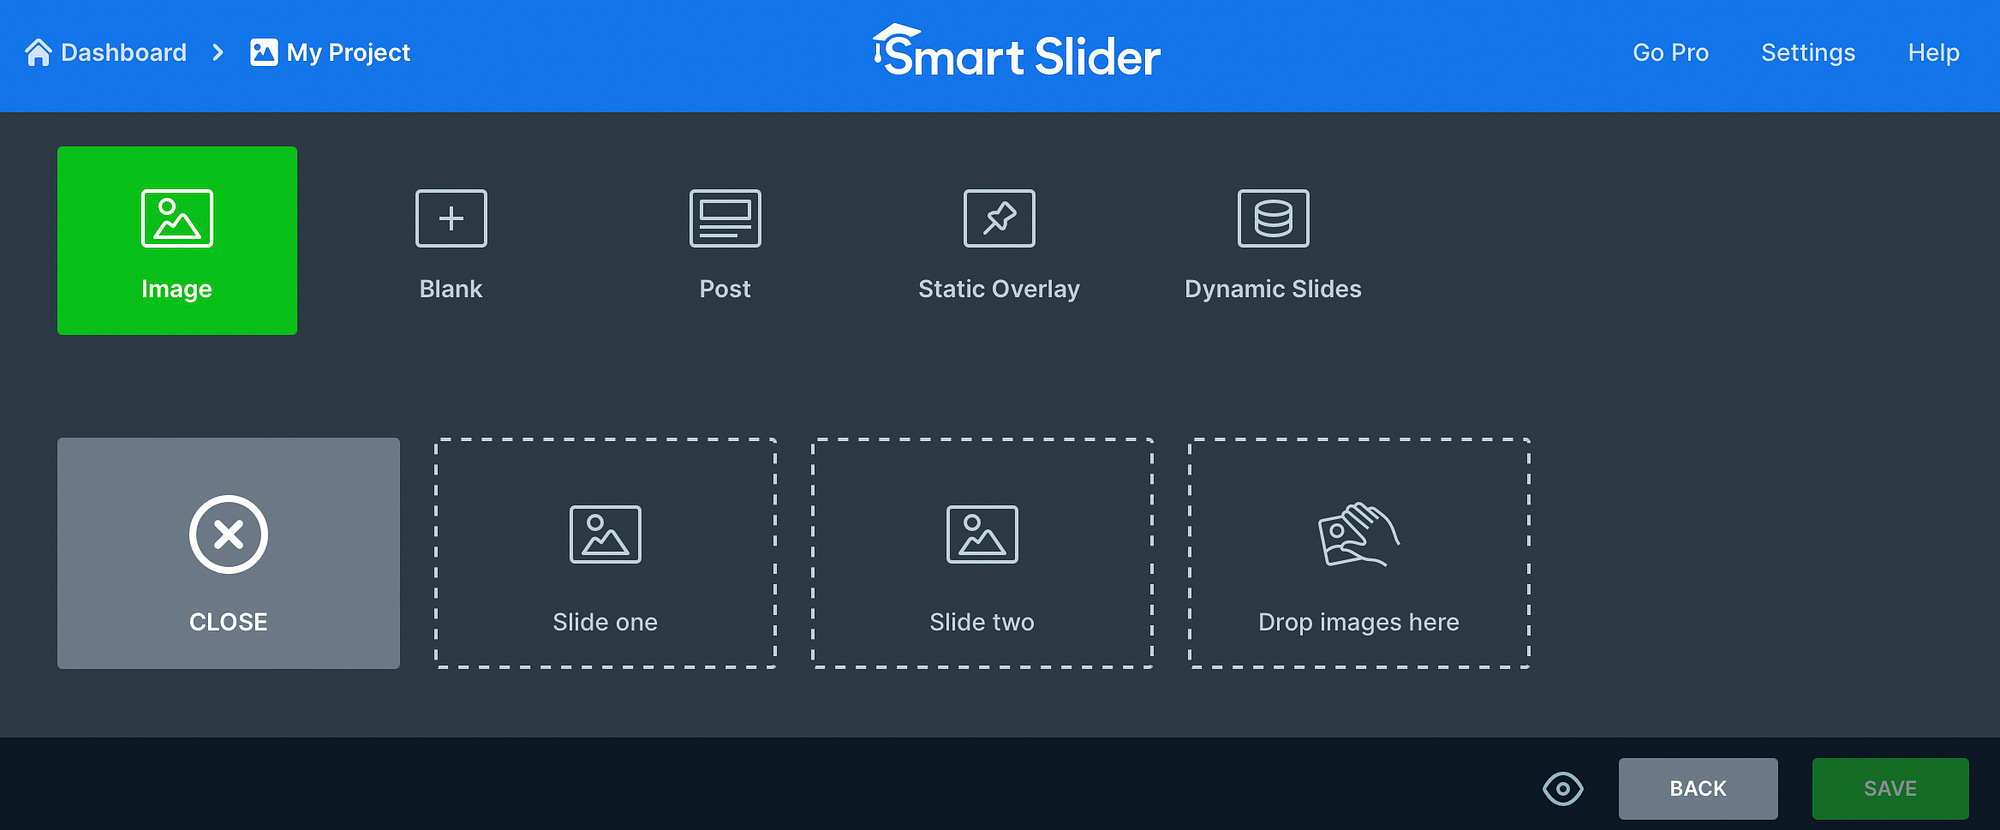 Upload images to Smart Slider 3.